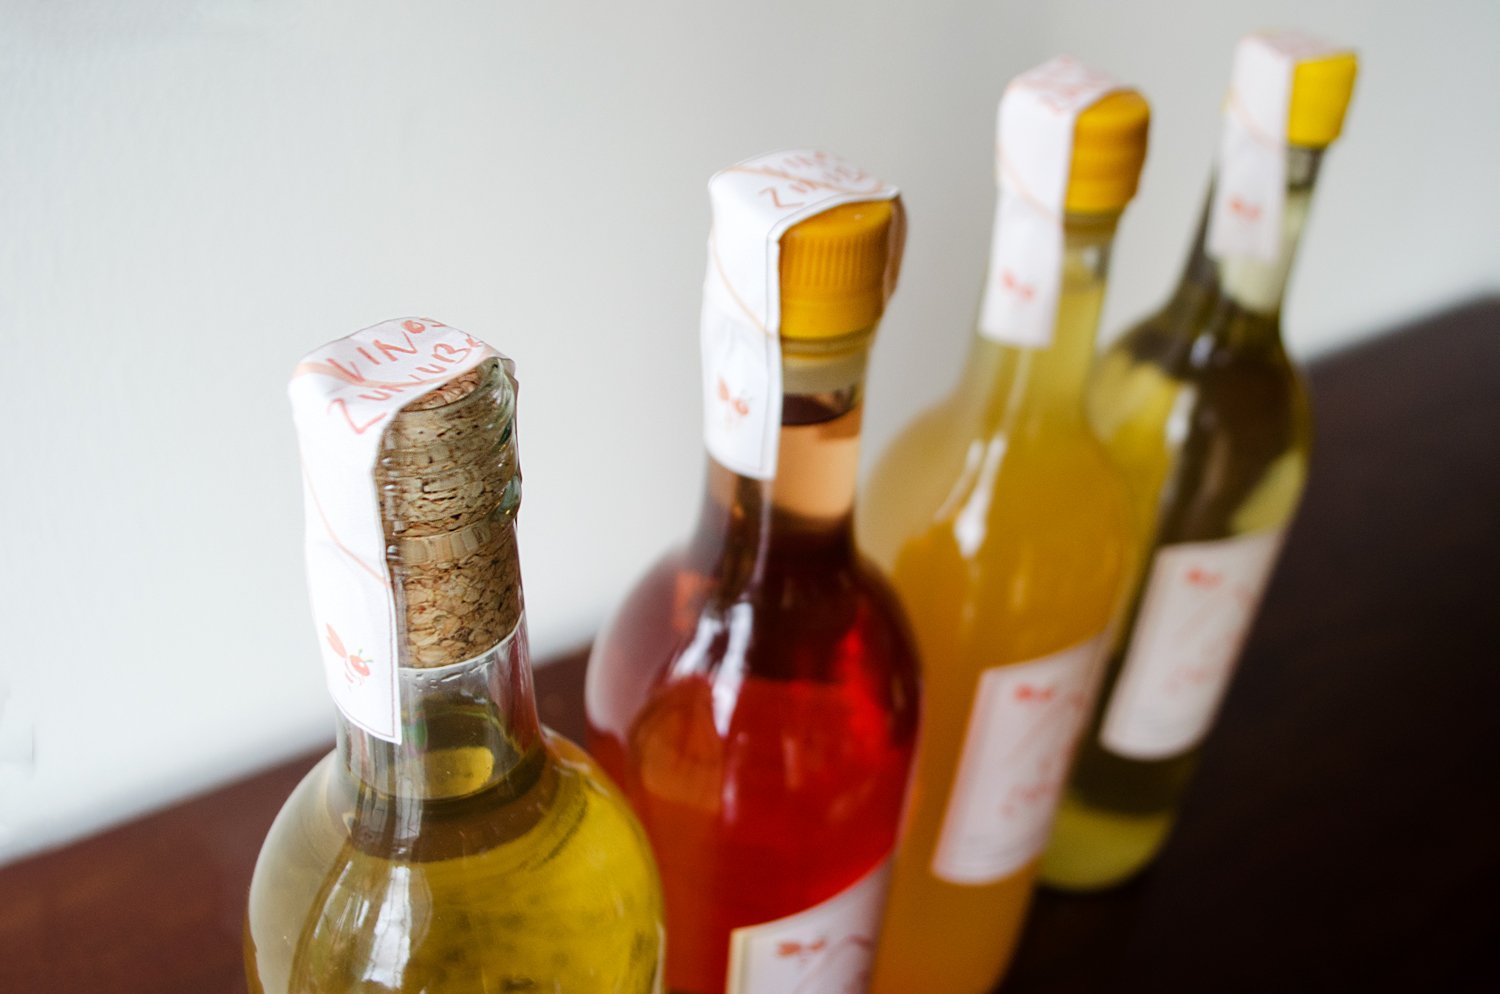 La maravilla del sabor: Vinos de Hidromiel